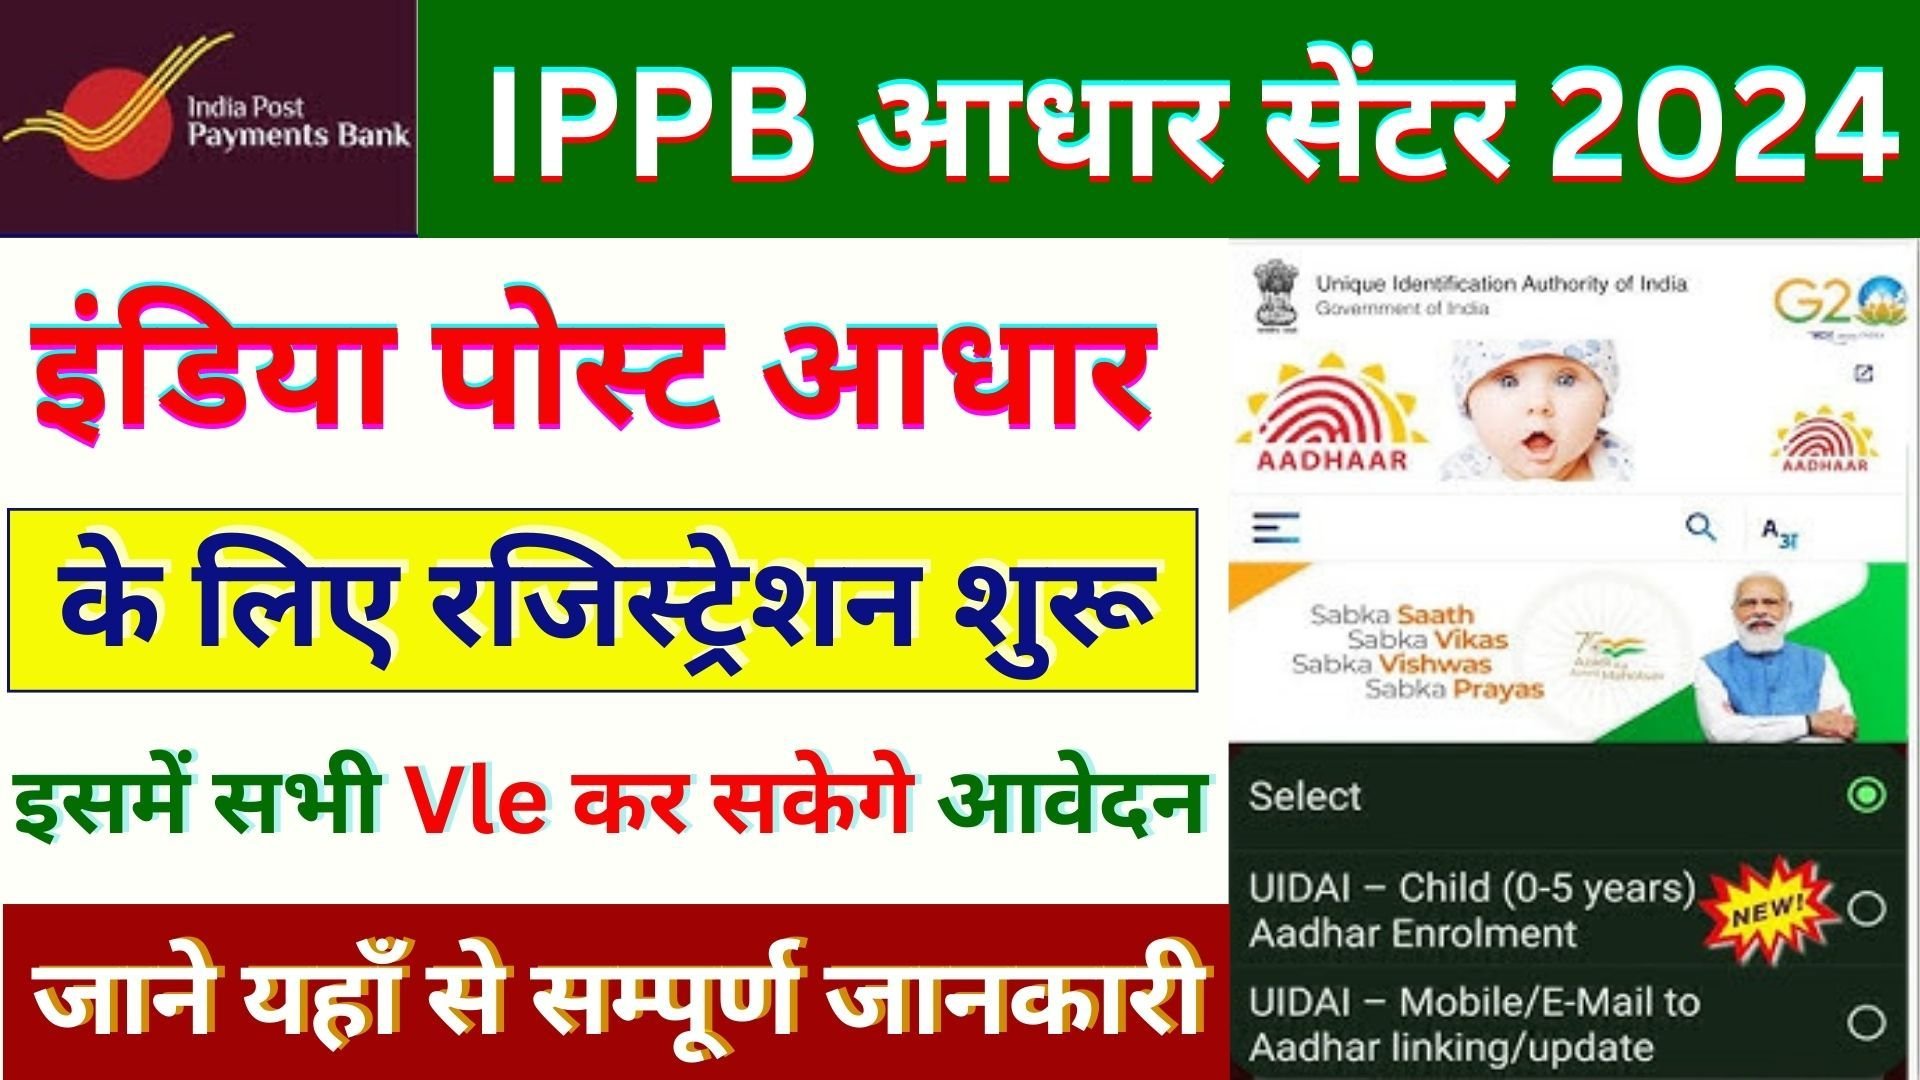 IPPB Aadhaar center Apply Start 2024 : Ippb child aadhar enrollment ! celc aadhar registration ippb